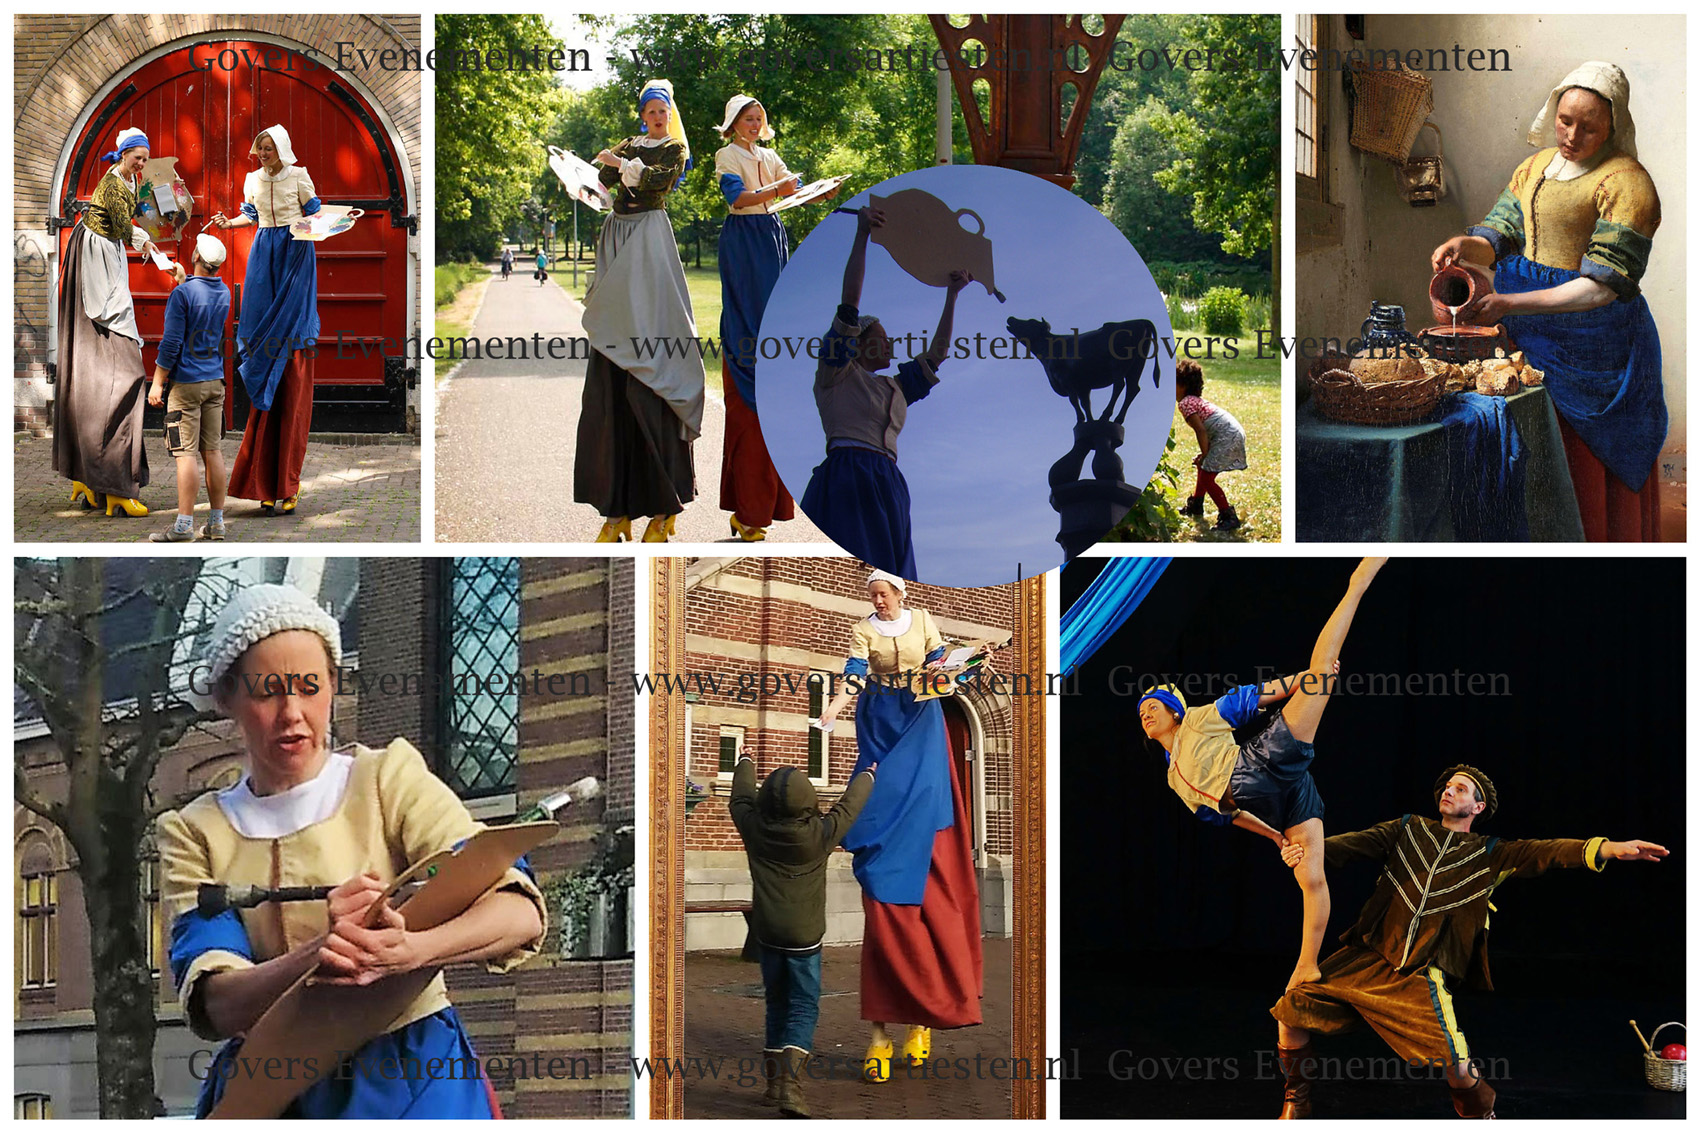 De Meisjes van Vermeer, steltenact, straattheater, ontvangtsact, steltenlopers, steltentheater, steltenact, act, kunstschilders op stelten, artiesten boeken, ontvangst act, thema feest, animatie act, schilderkunst, portret op stelten, Govers Evenementen, www.goversartiesten.nl